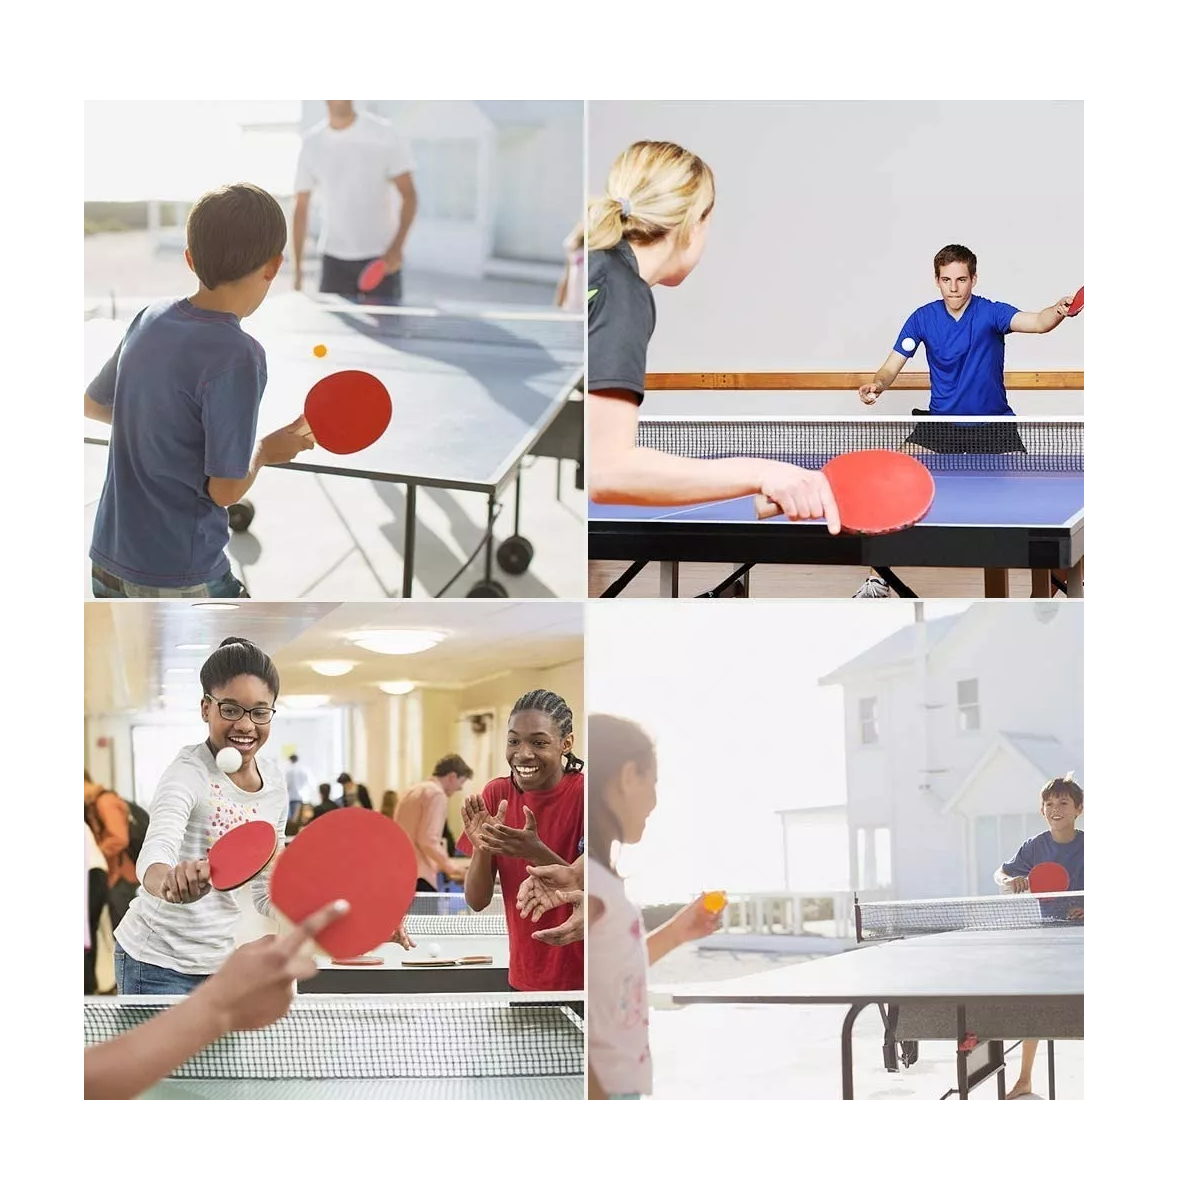 Red Retráctil Regulable Net Ping Pong Tenis de Mesa - PRO Accesorios